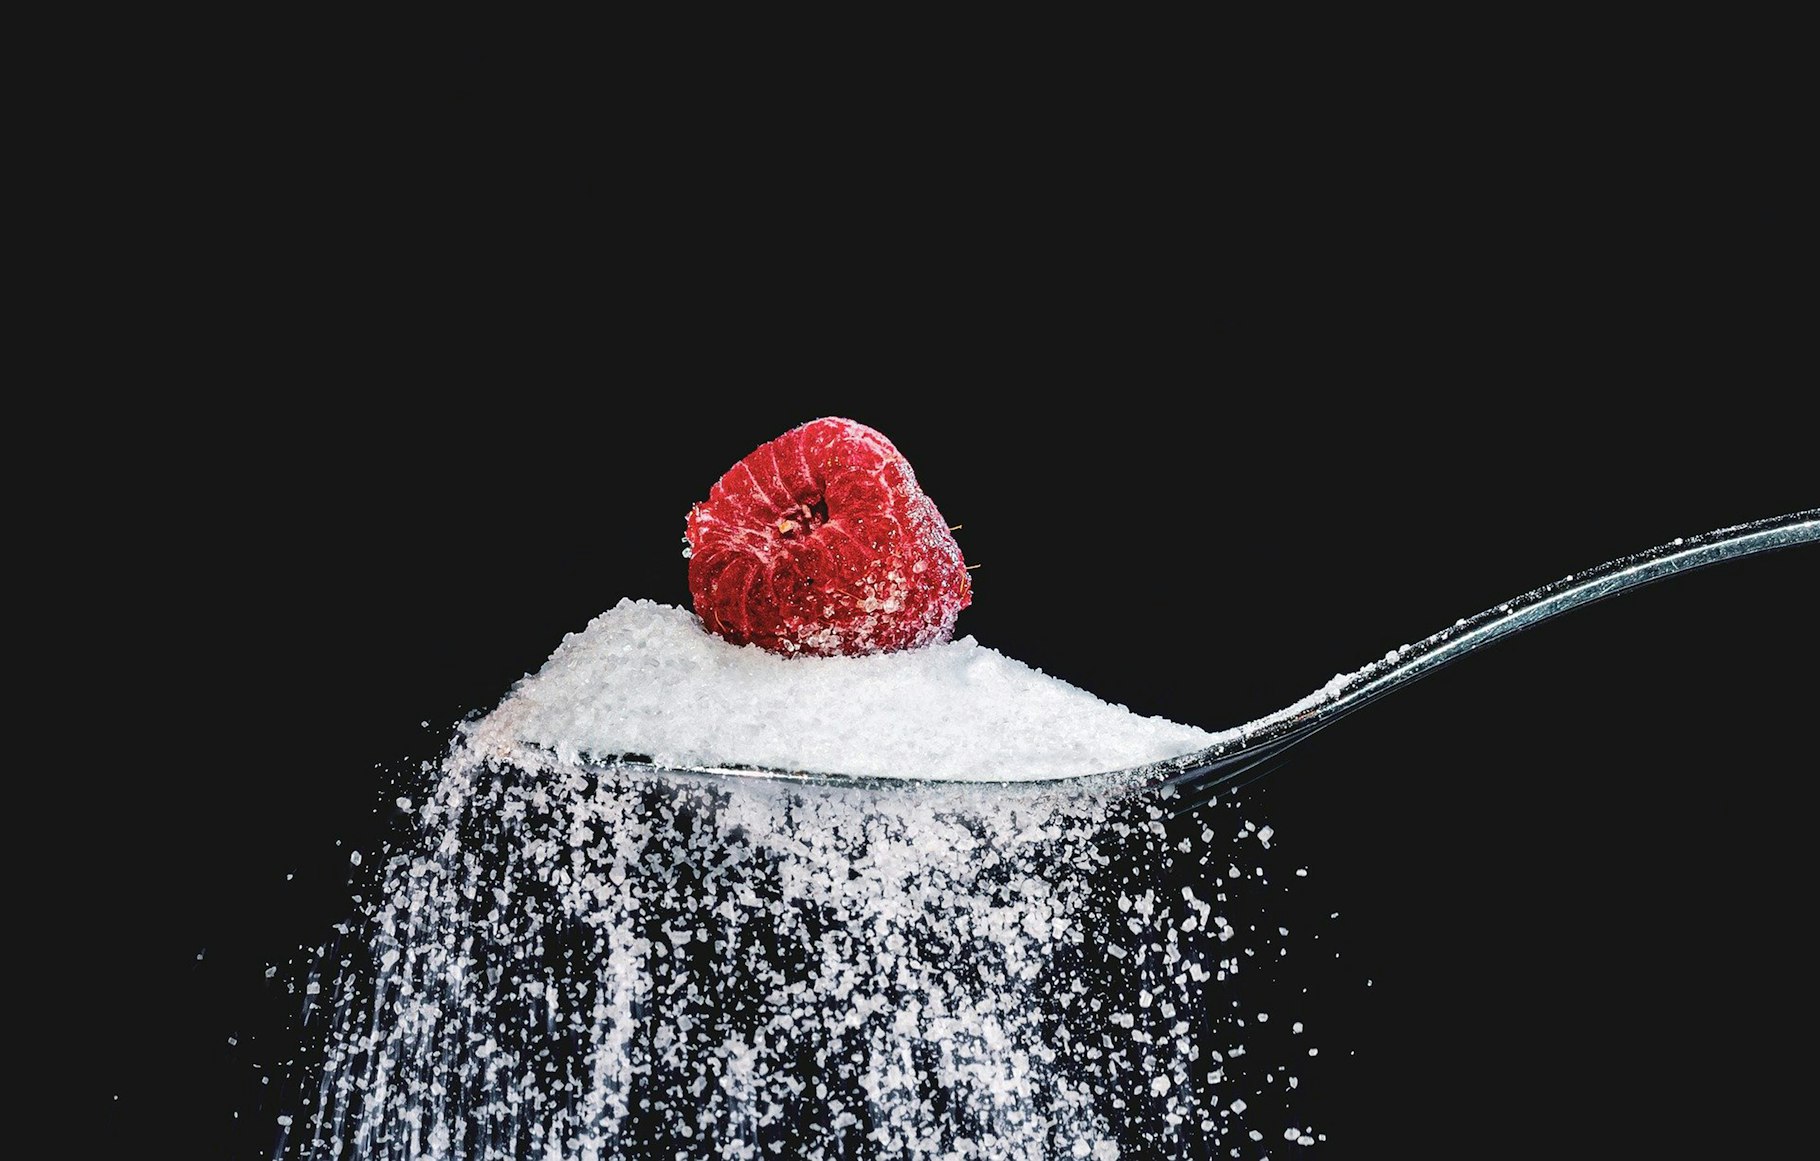 Gula dapat membuat bagian tubuh dan wajah terlihat bengkak